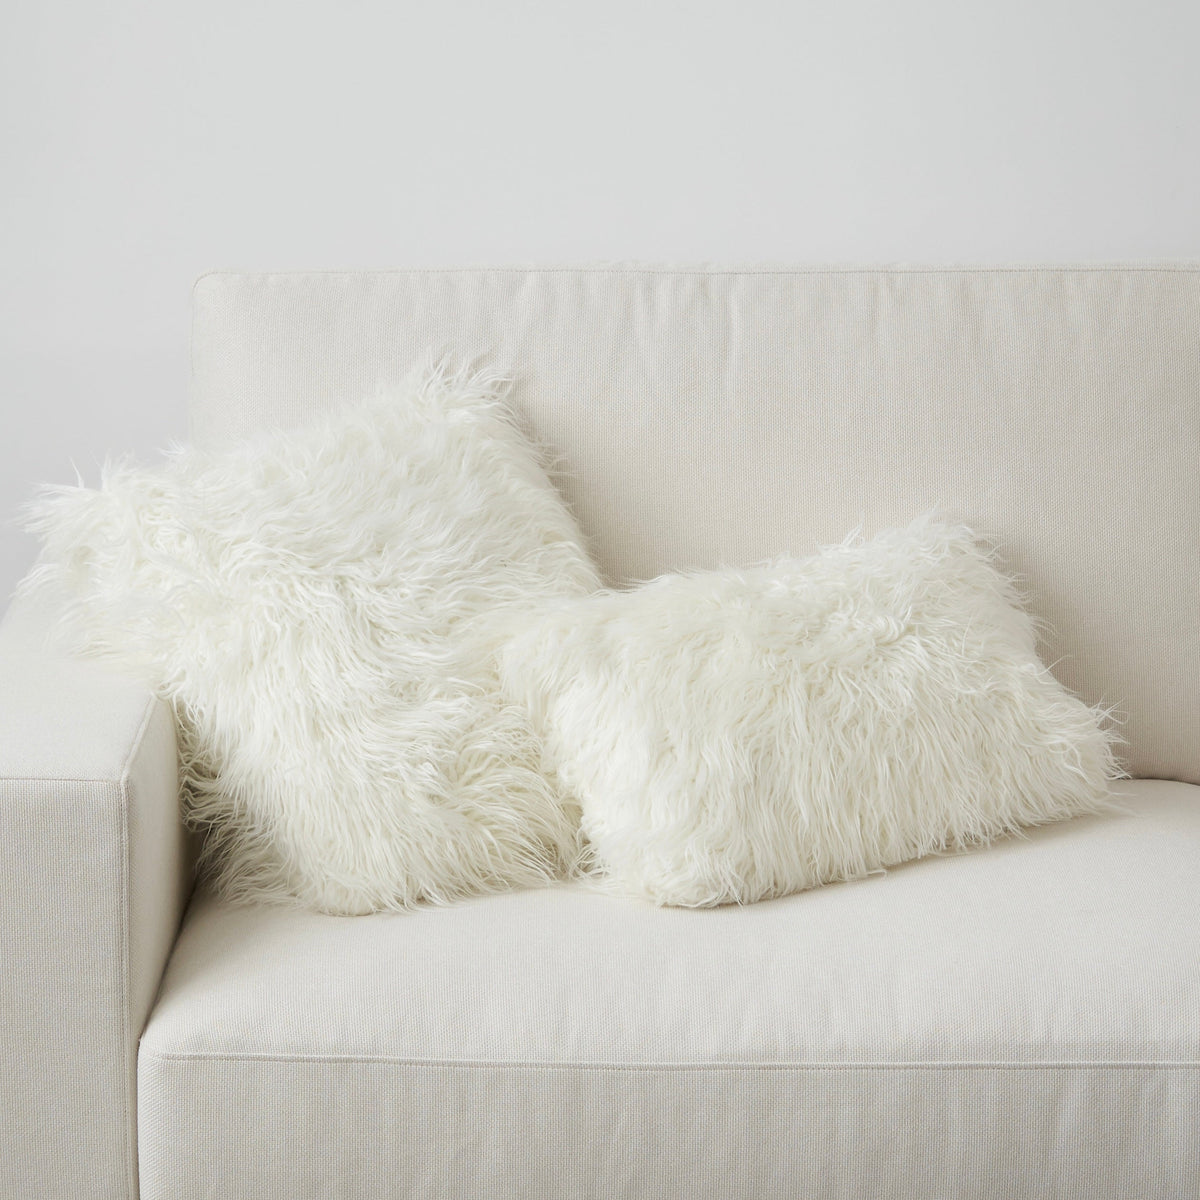 The Fluffier Cushion - Lumbar Pillow